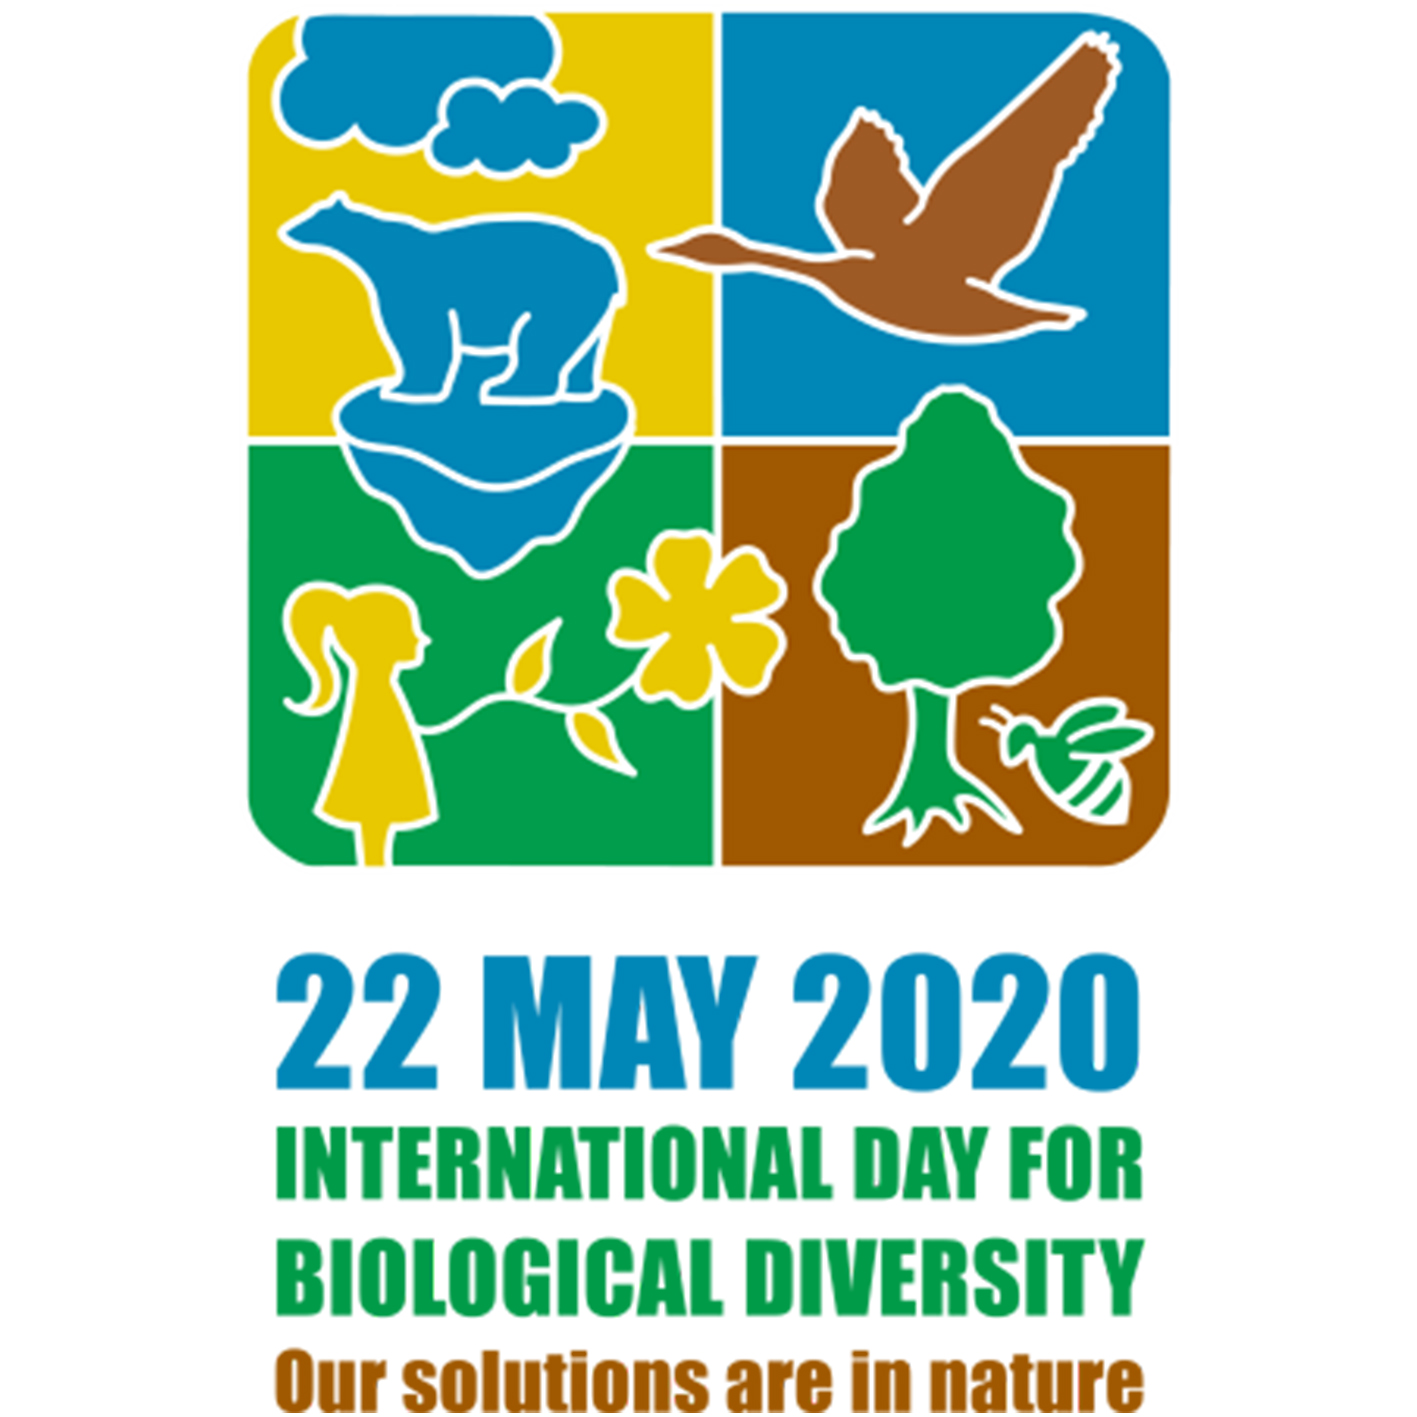 International Biodiversity Day